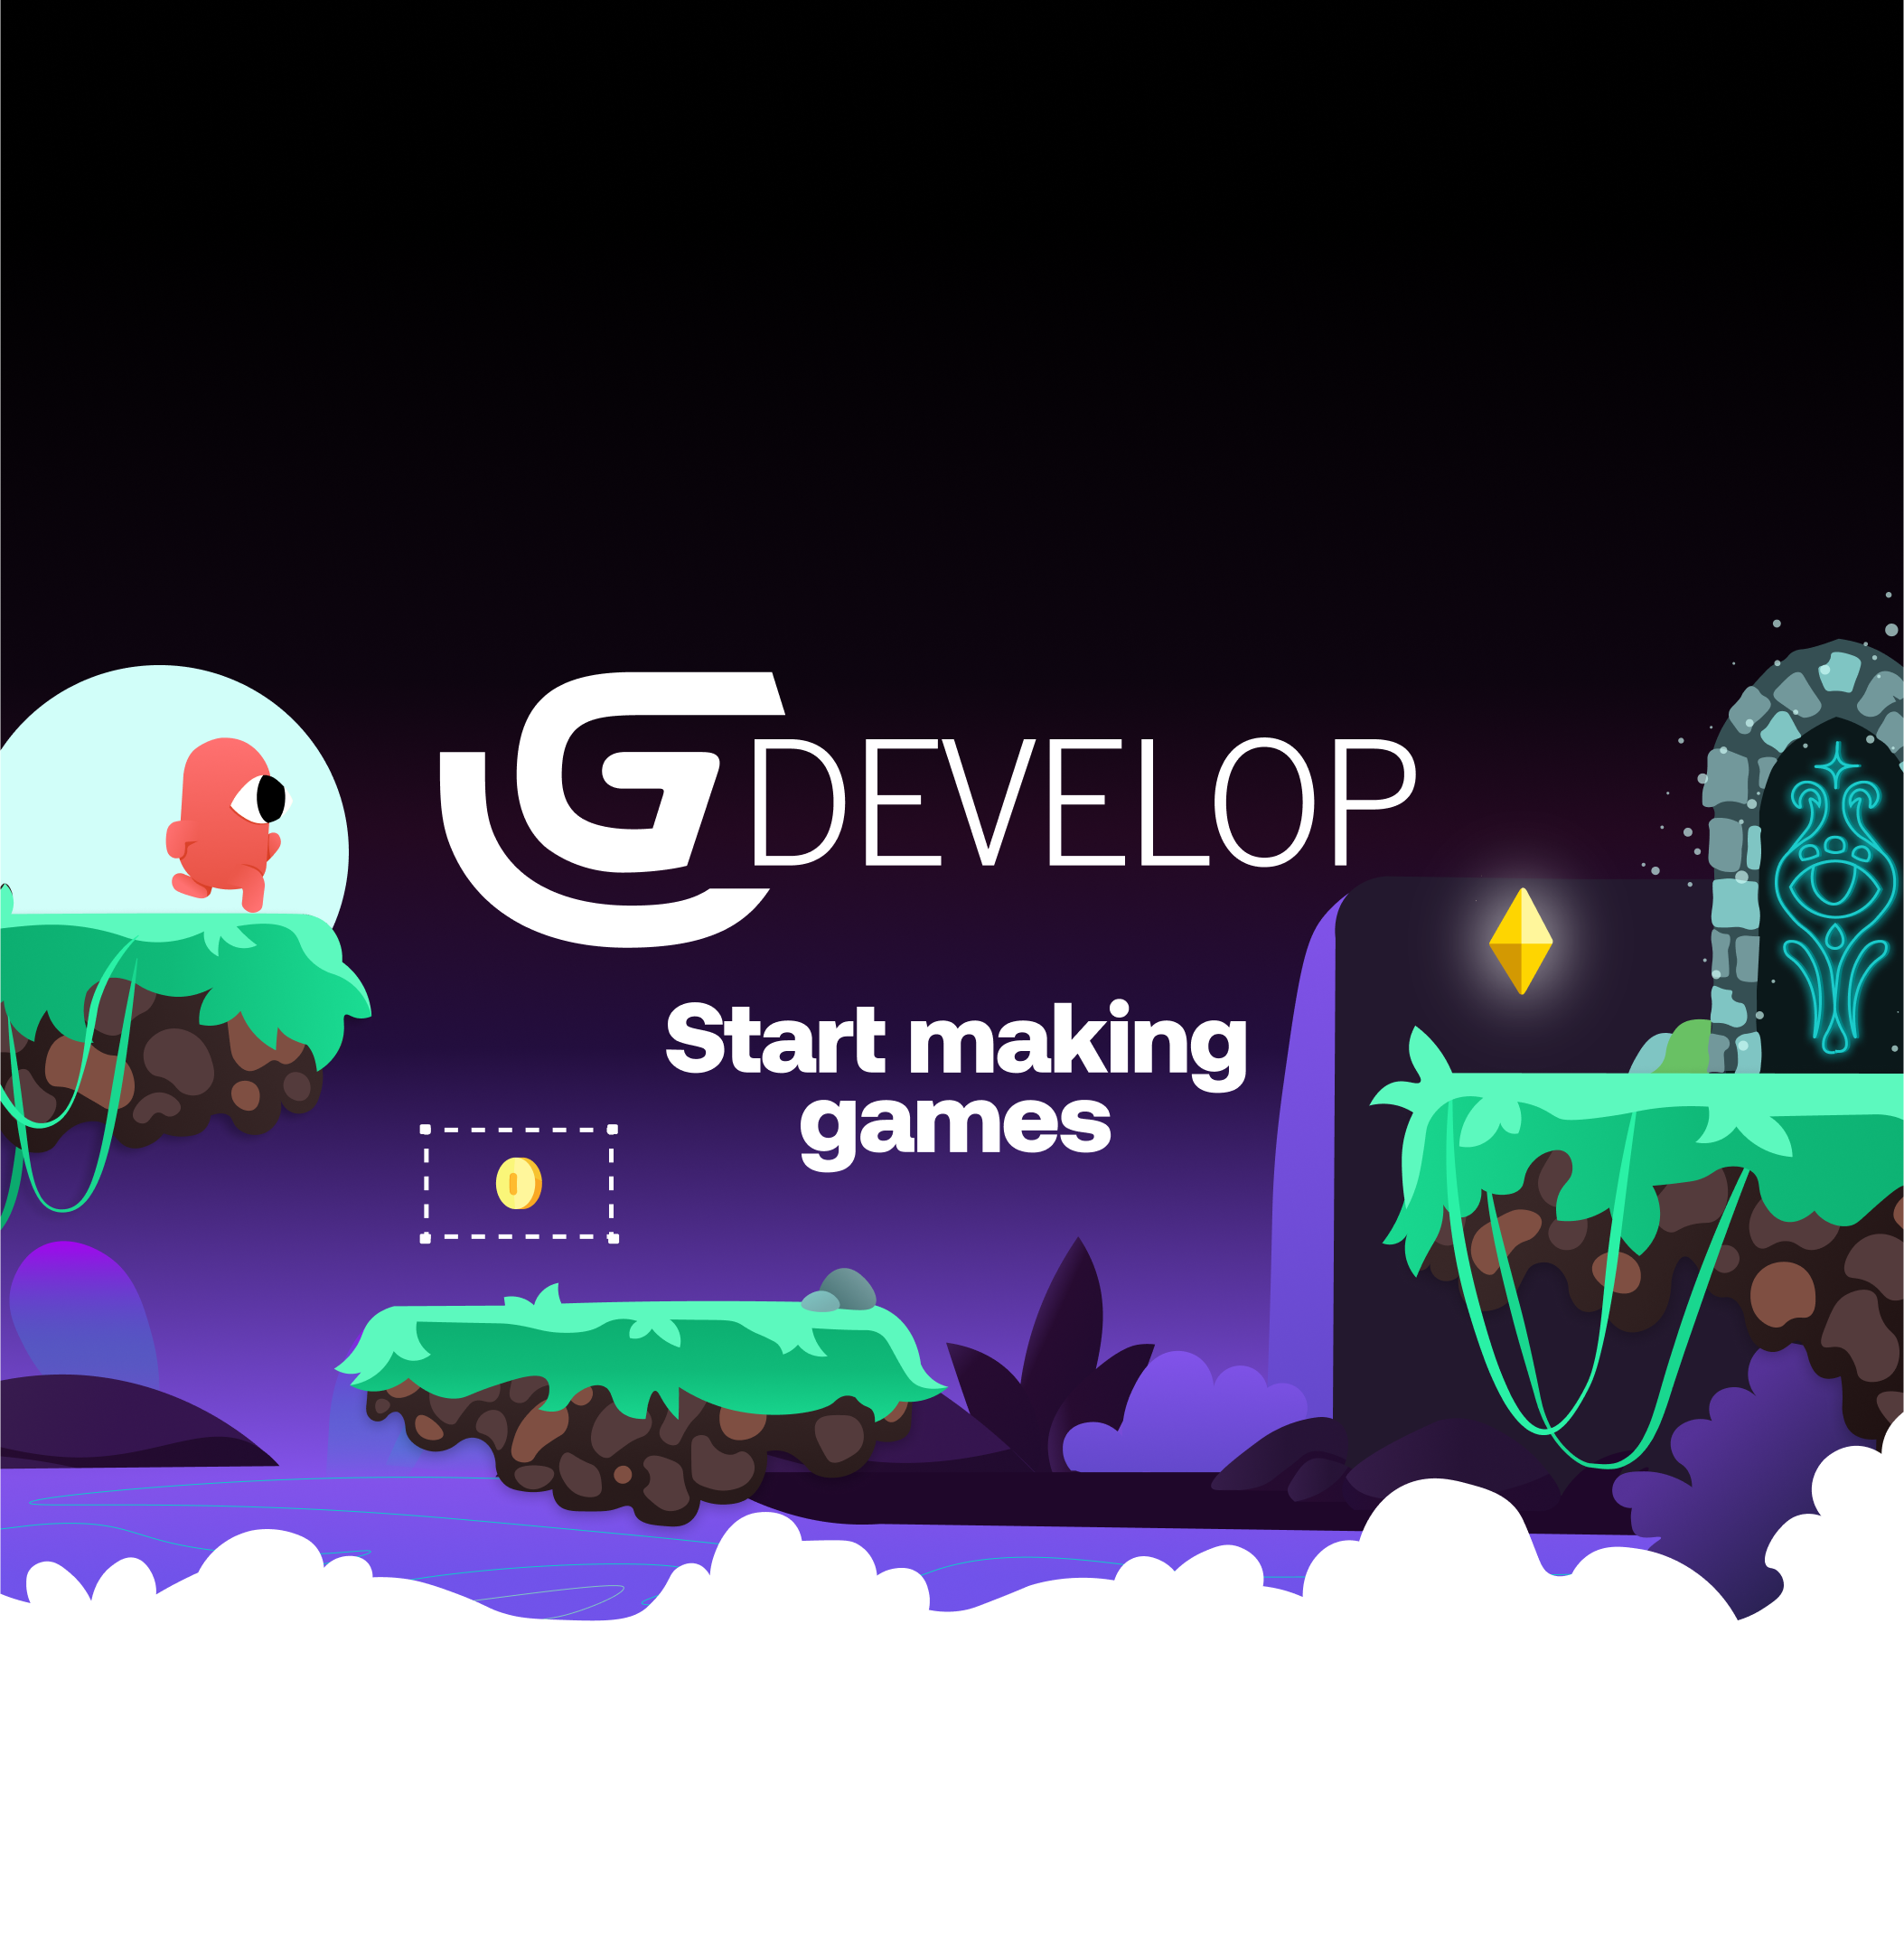 Conceptos básicos de diseño de videojuegos - GDEVELOP una herramienta fácil de utilizar